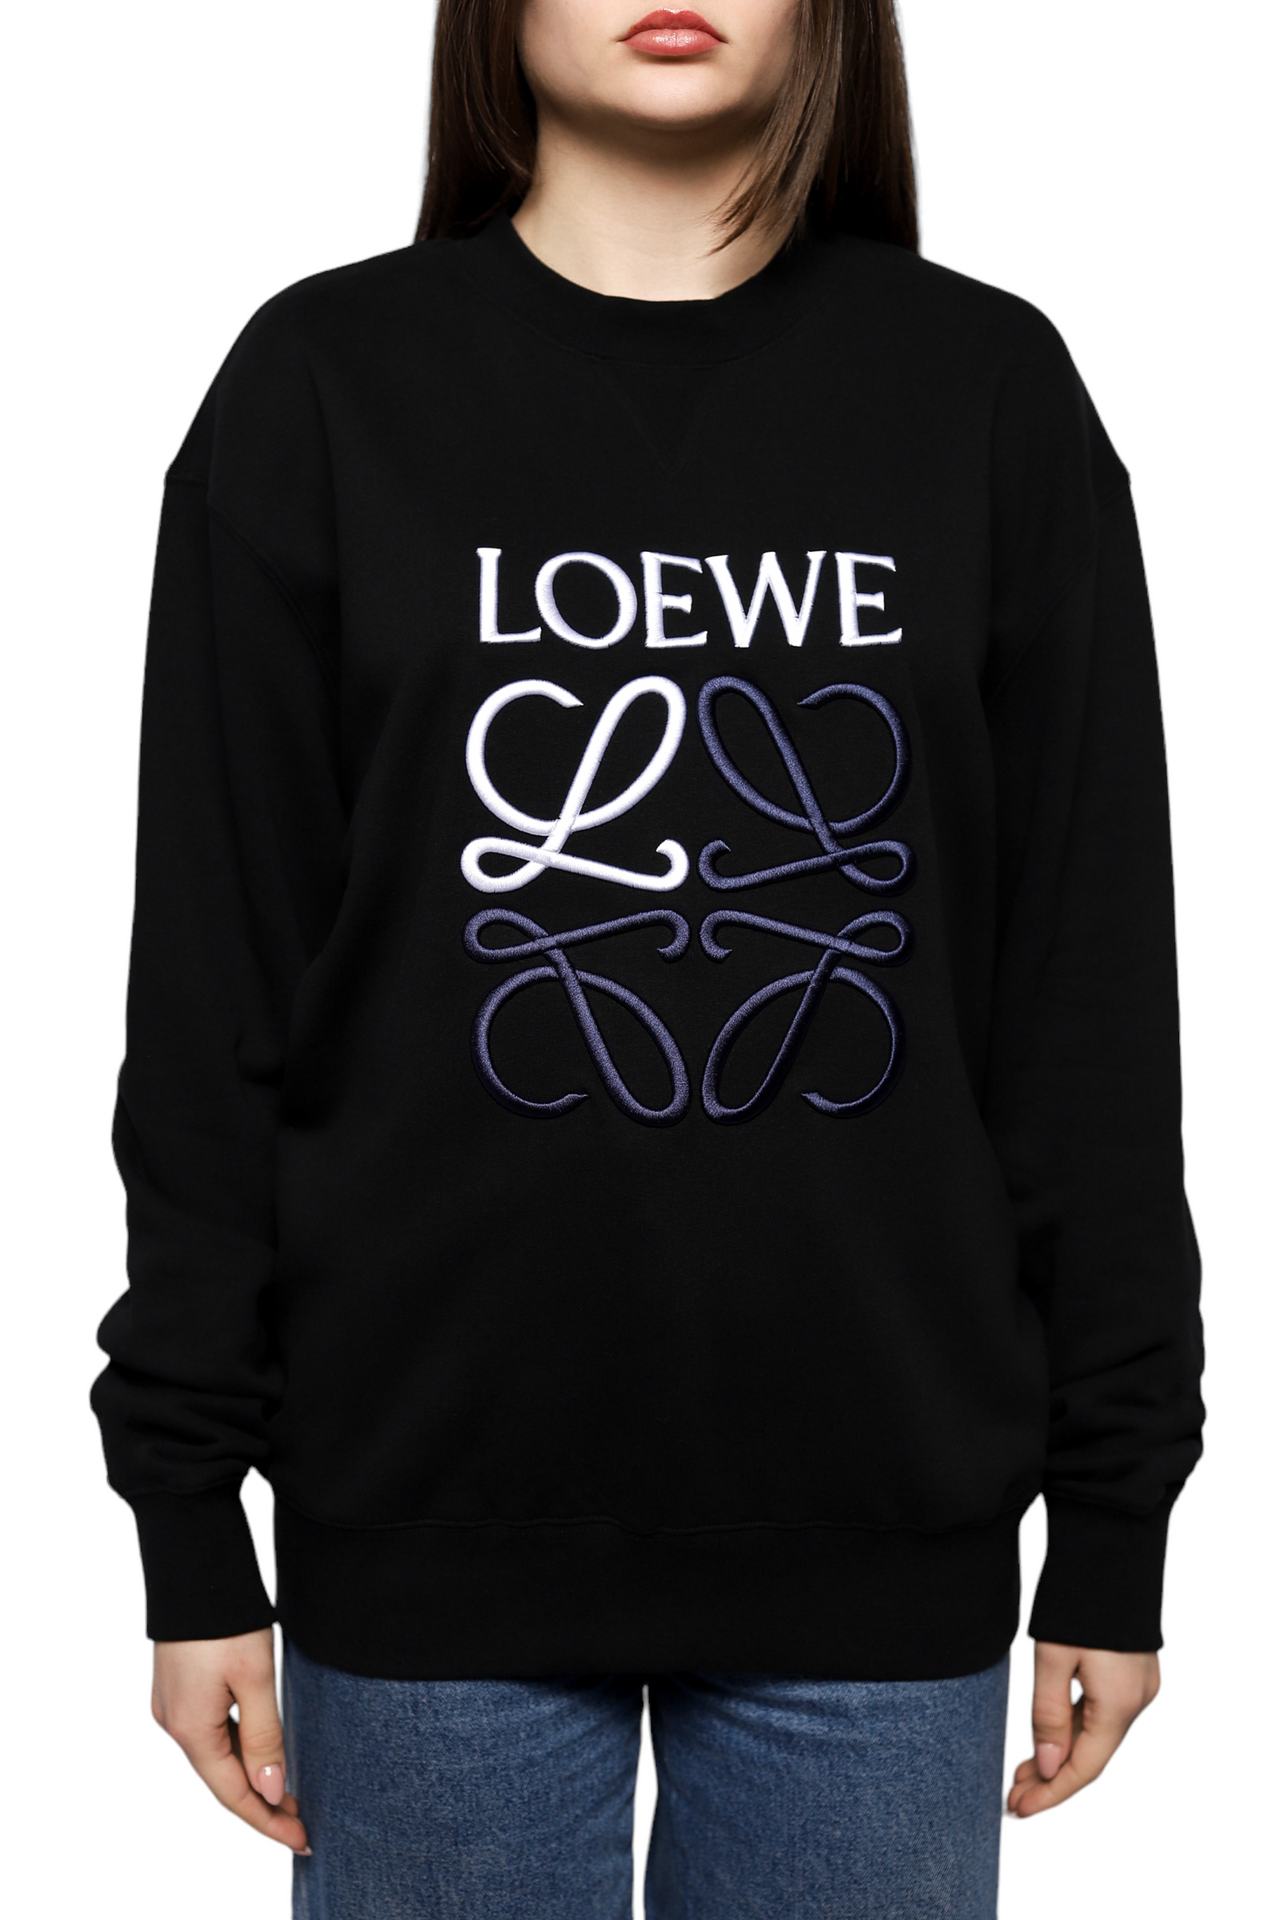 Loewe Anagram Sweatshirt Black